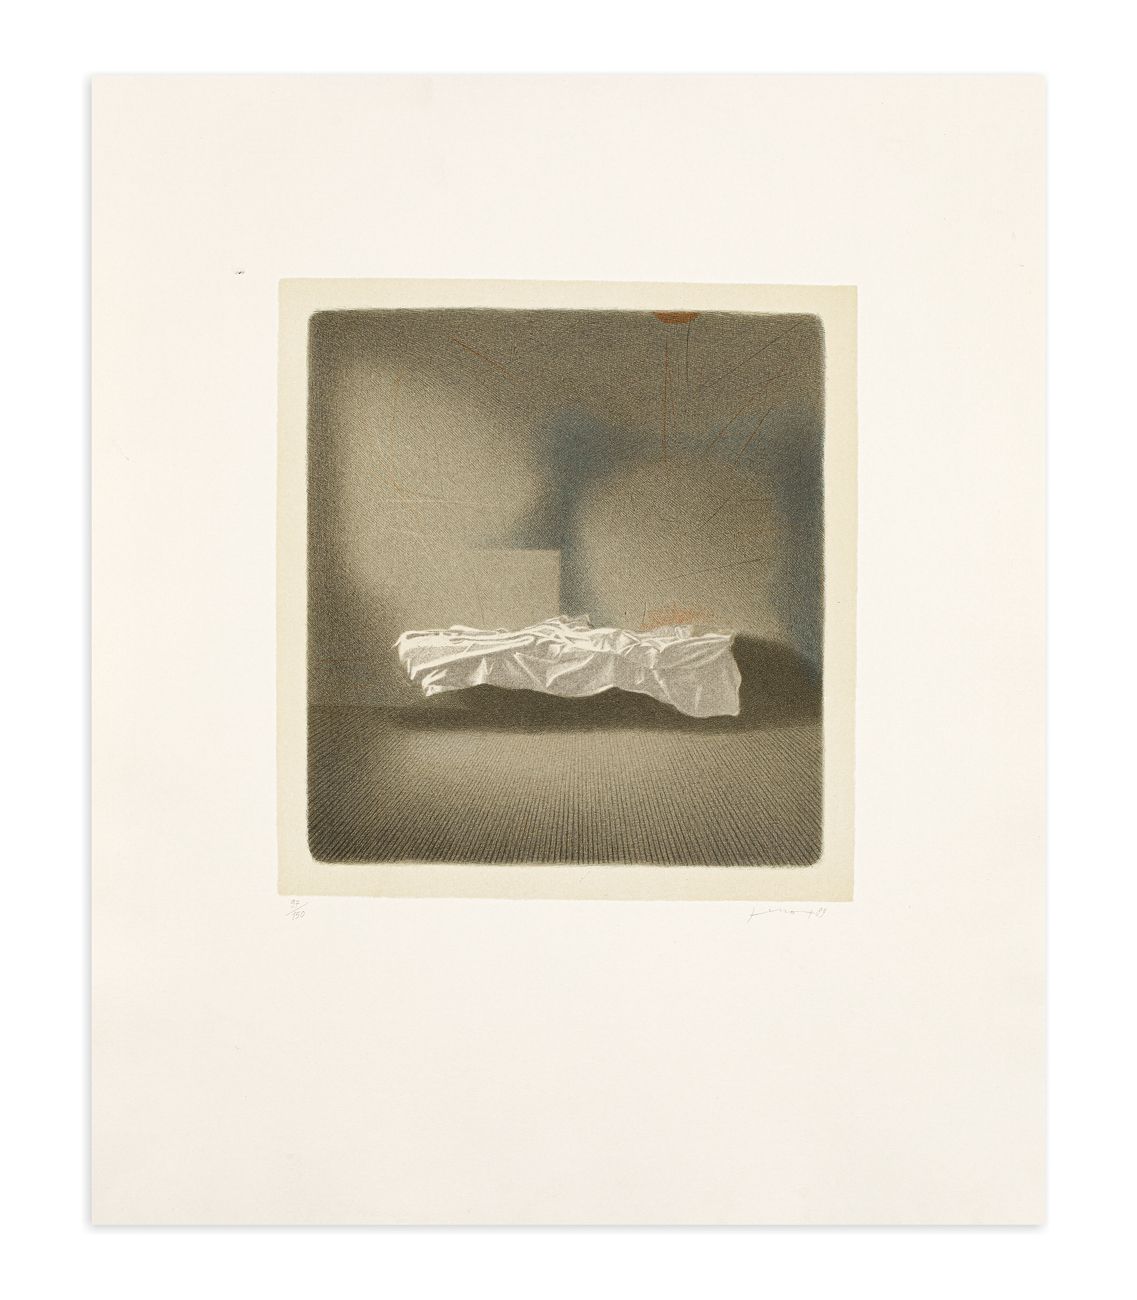 GIANFRANCO FERRONI (1927-2001) - Lettino, 1989 Litografía sobre fondo

60x50 cm
&hellip;